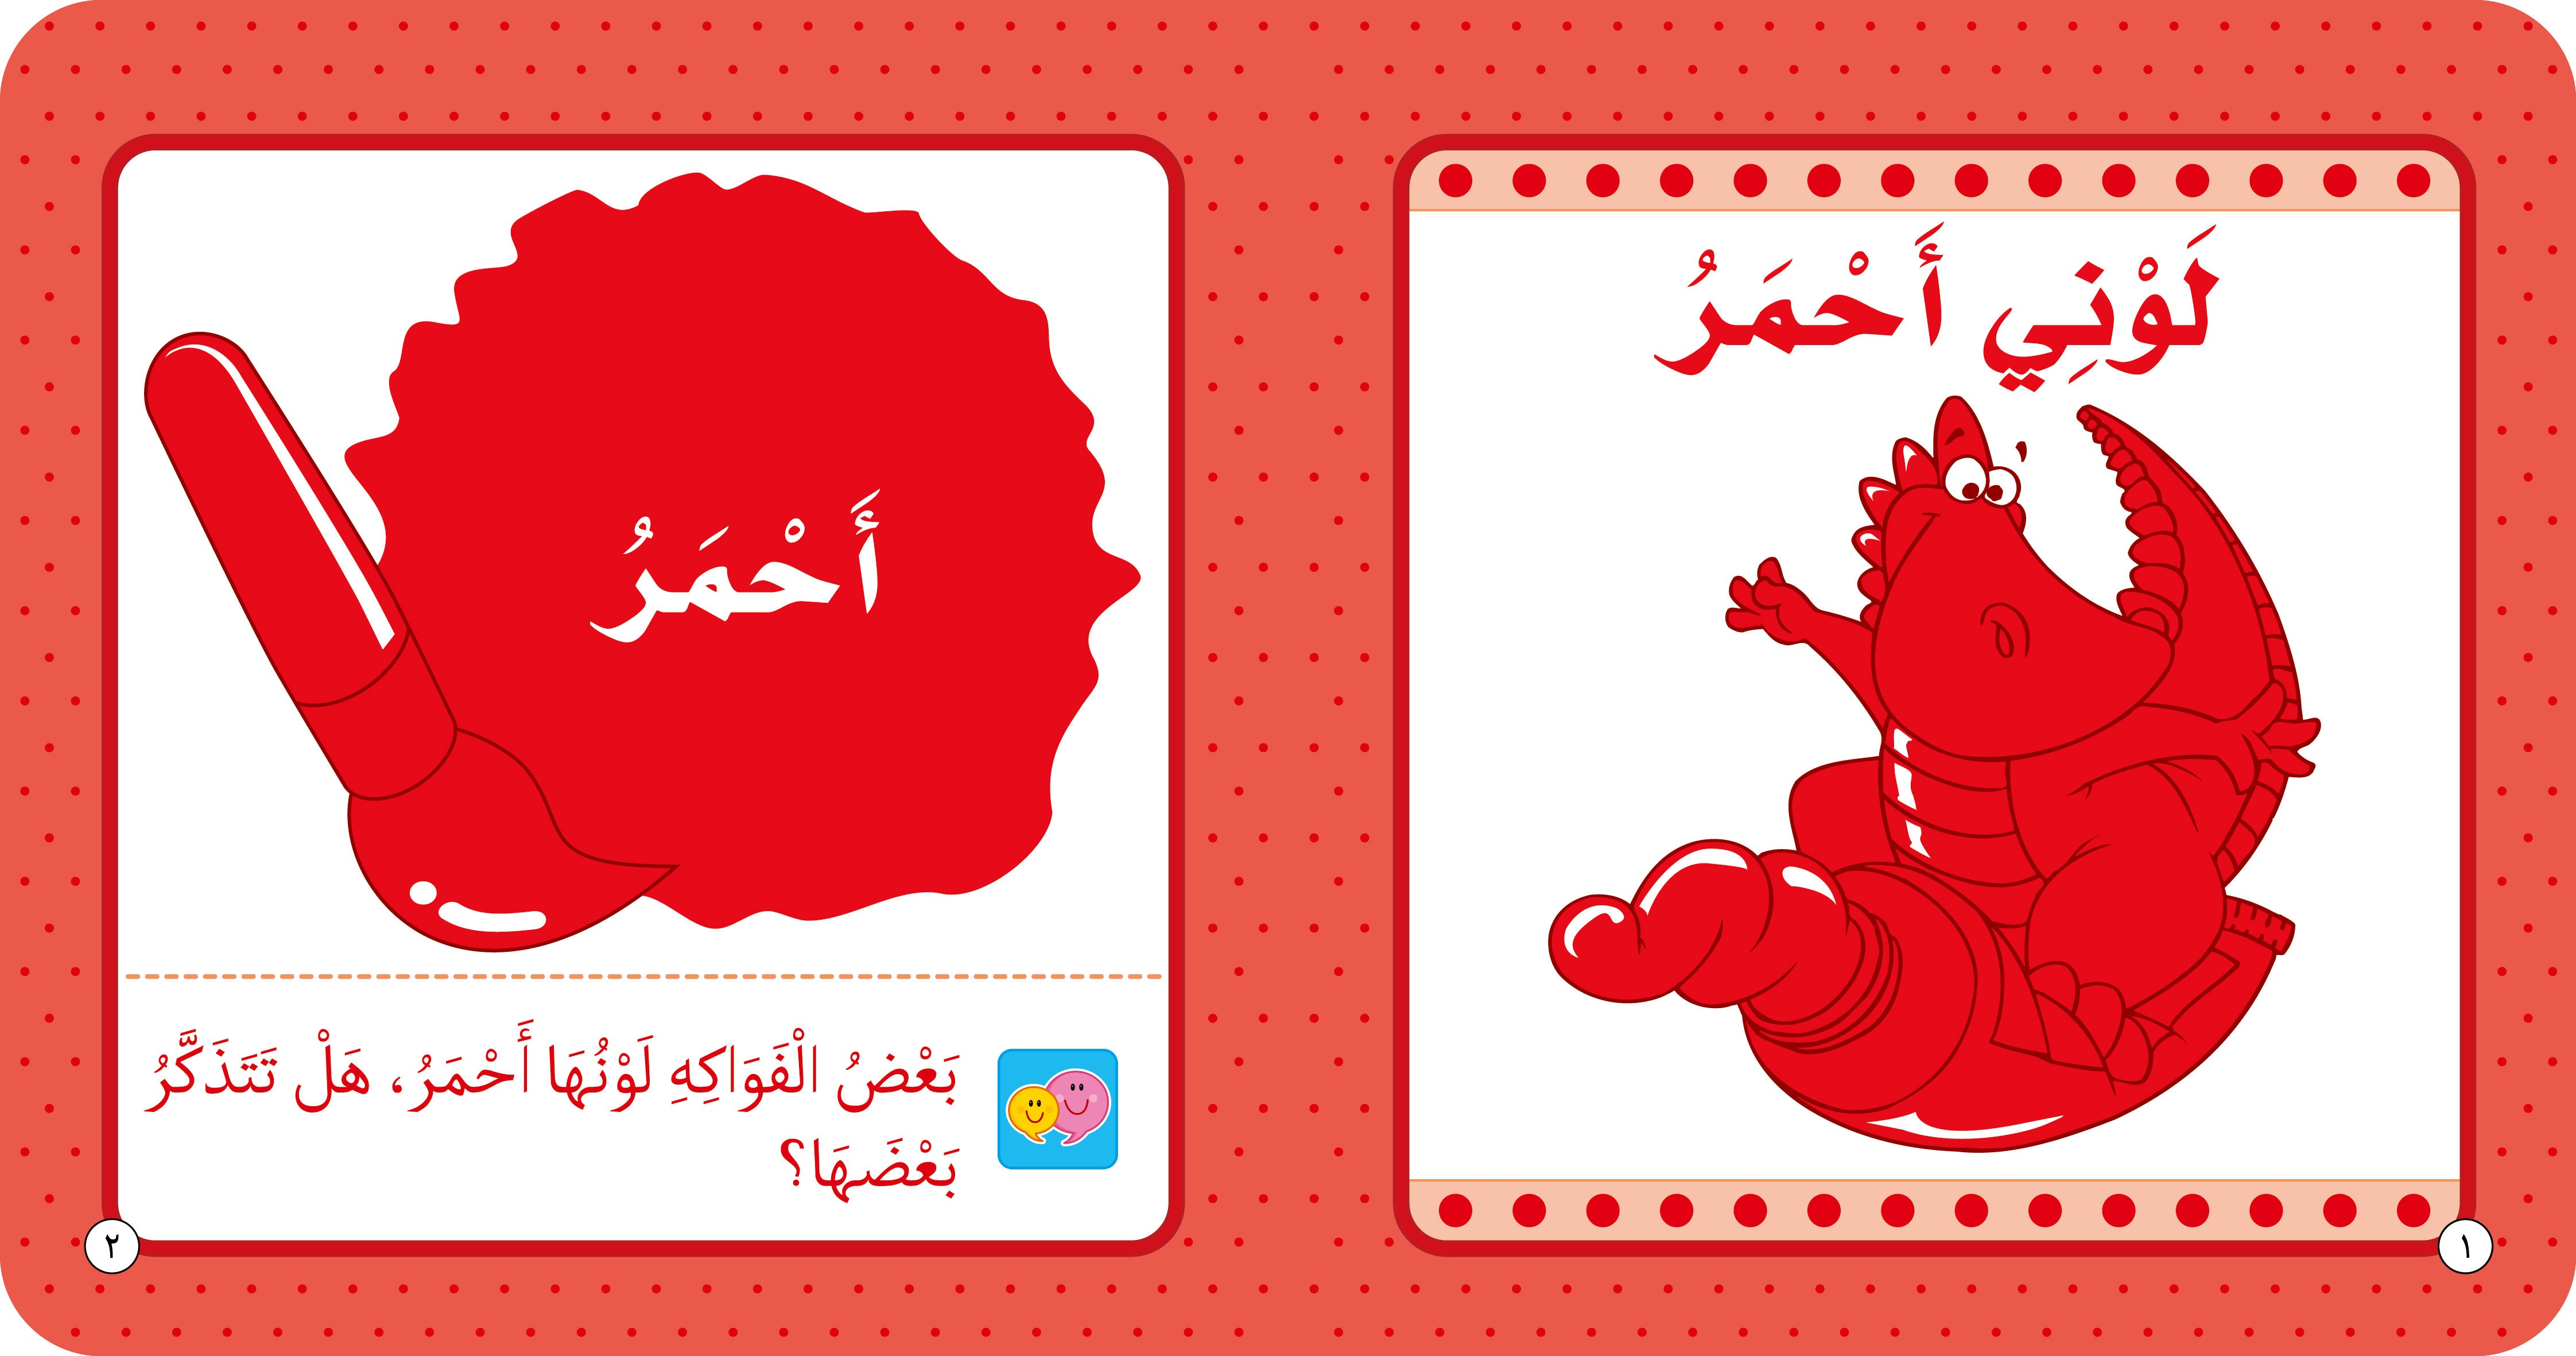  الألوان - كتاب تعليمي للأطفال باللغة العربية